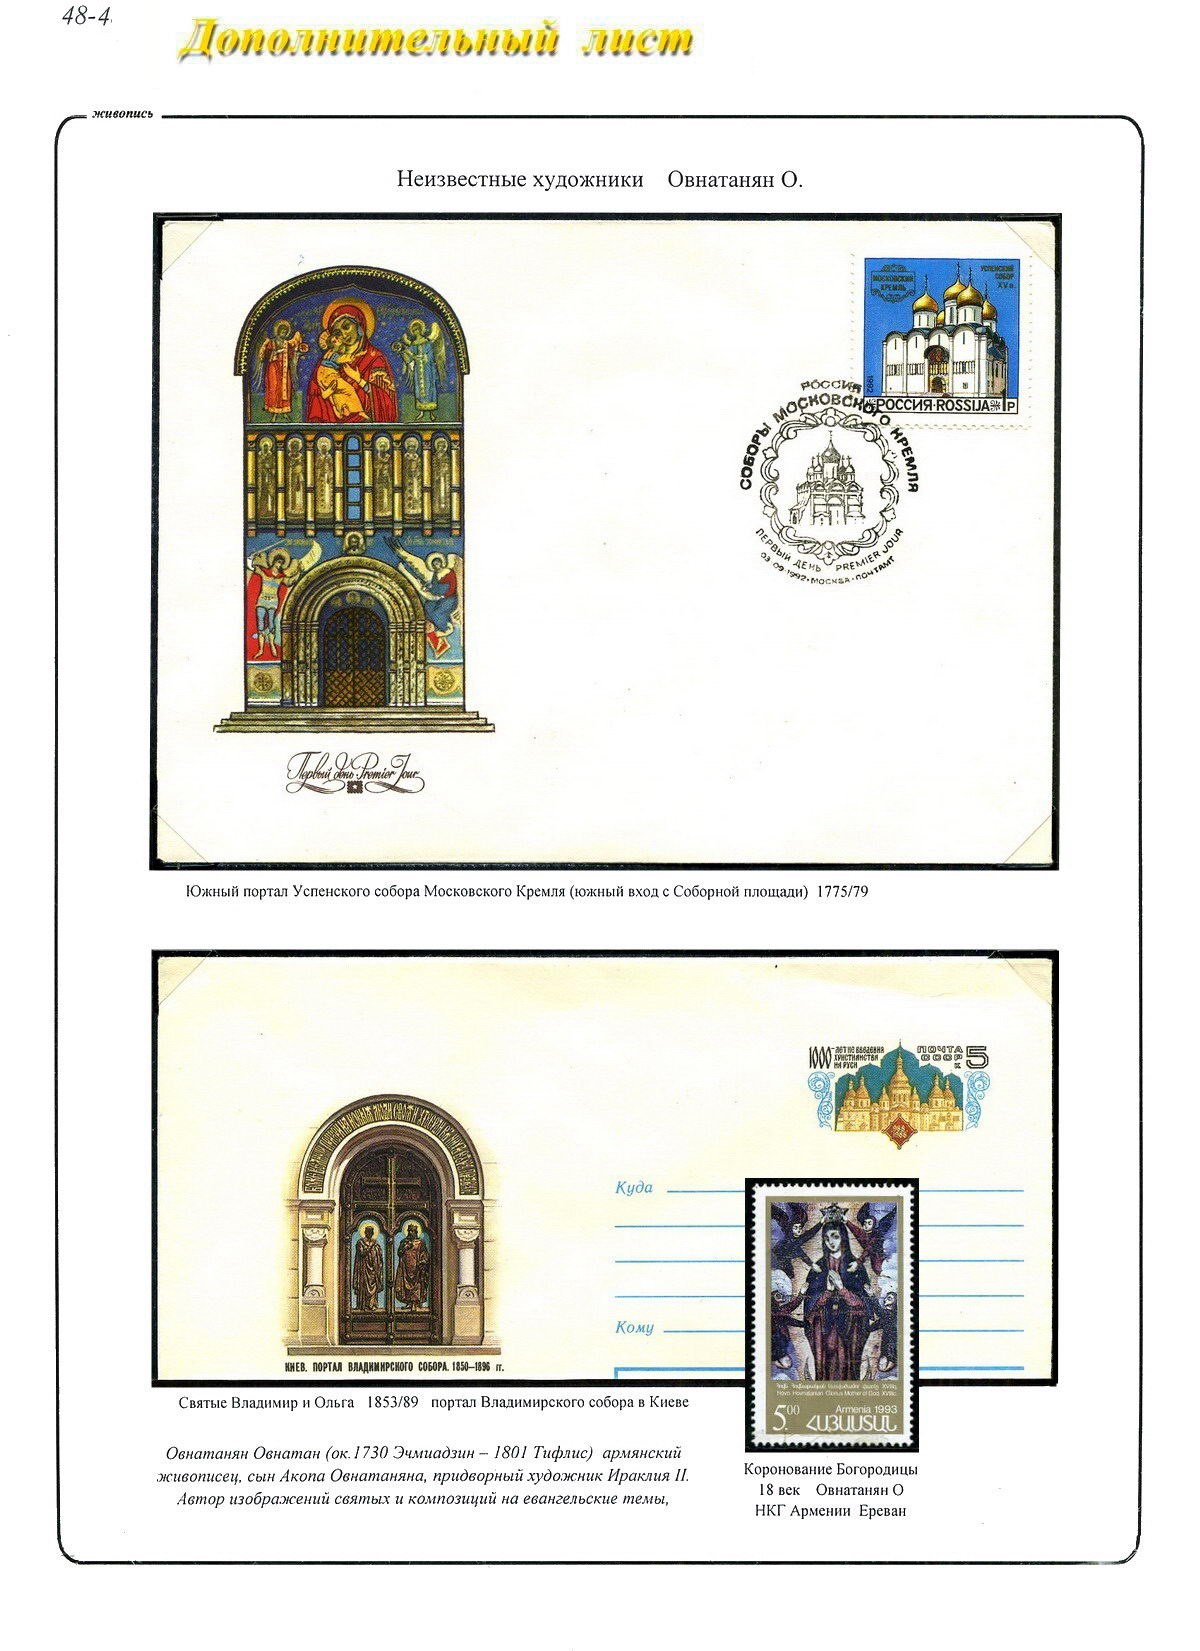 2 портала соборов, лист стенда